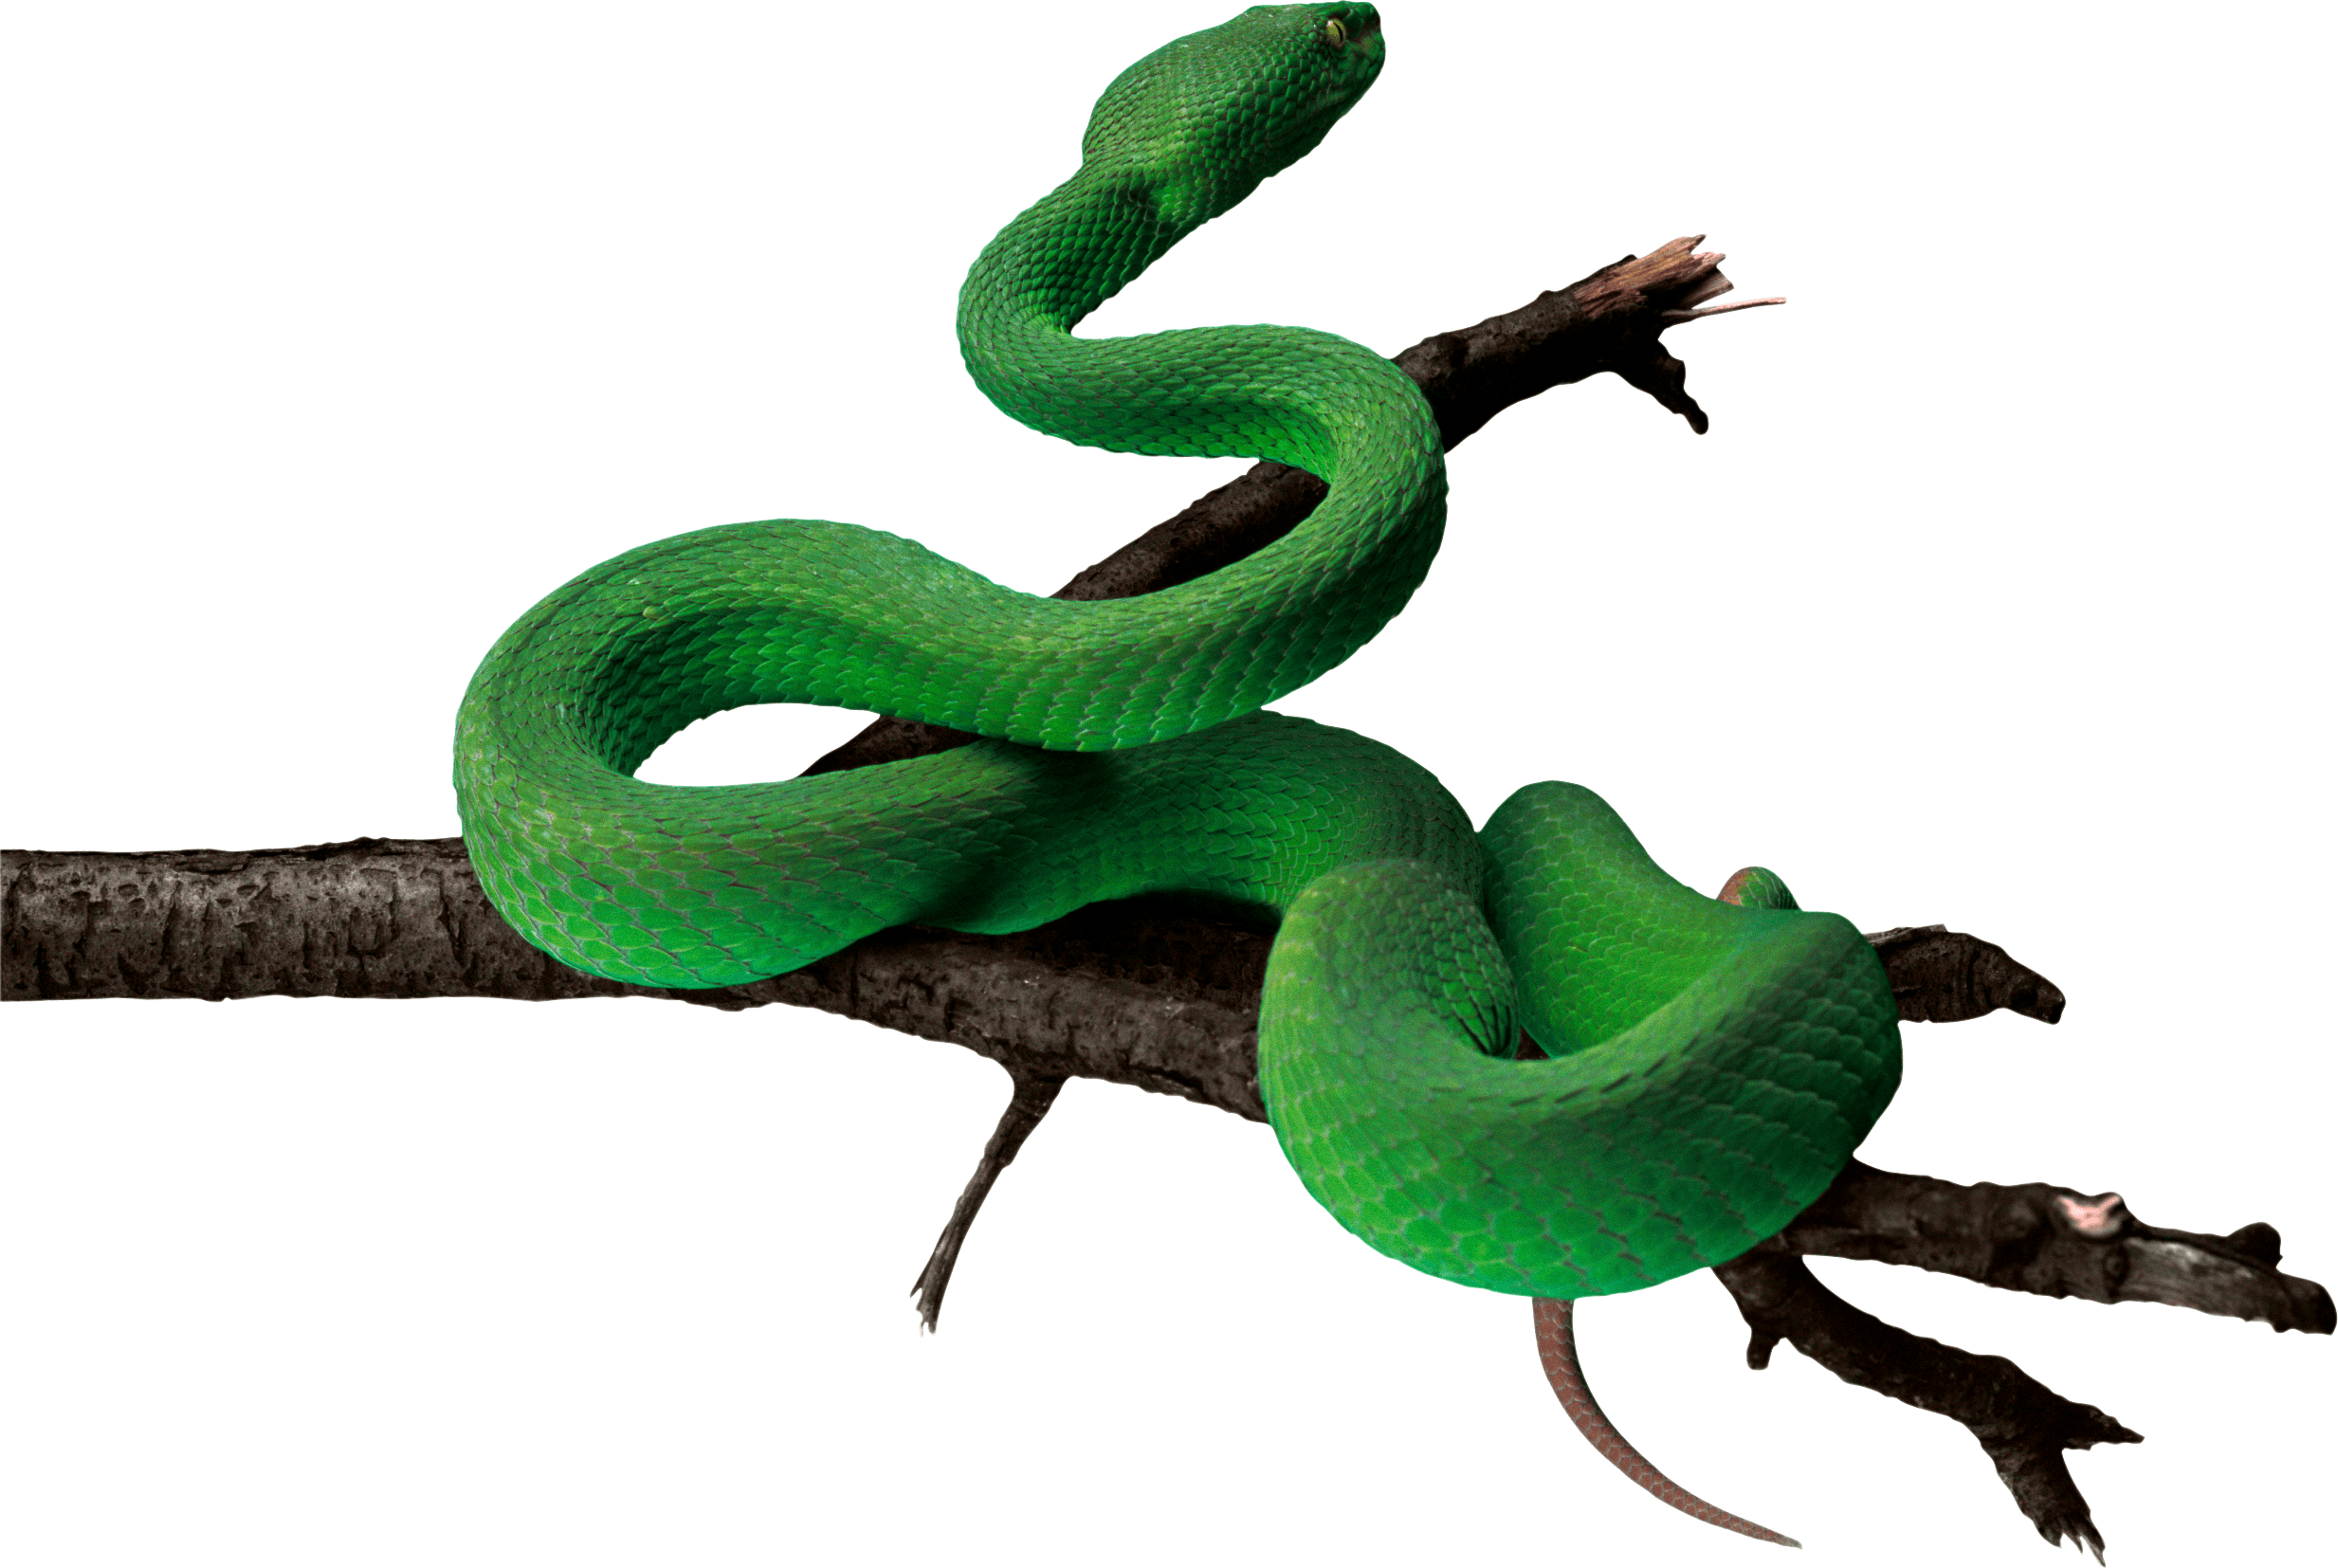 Download Green Snake Png Image HQ PNG Image FreePNGImg | vlr.eng.br